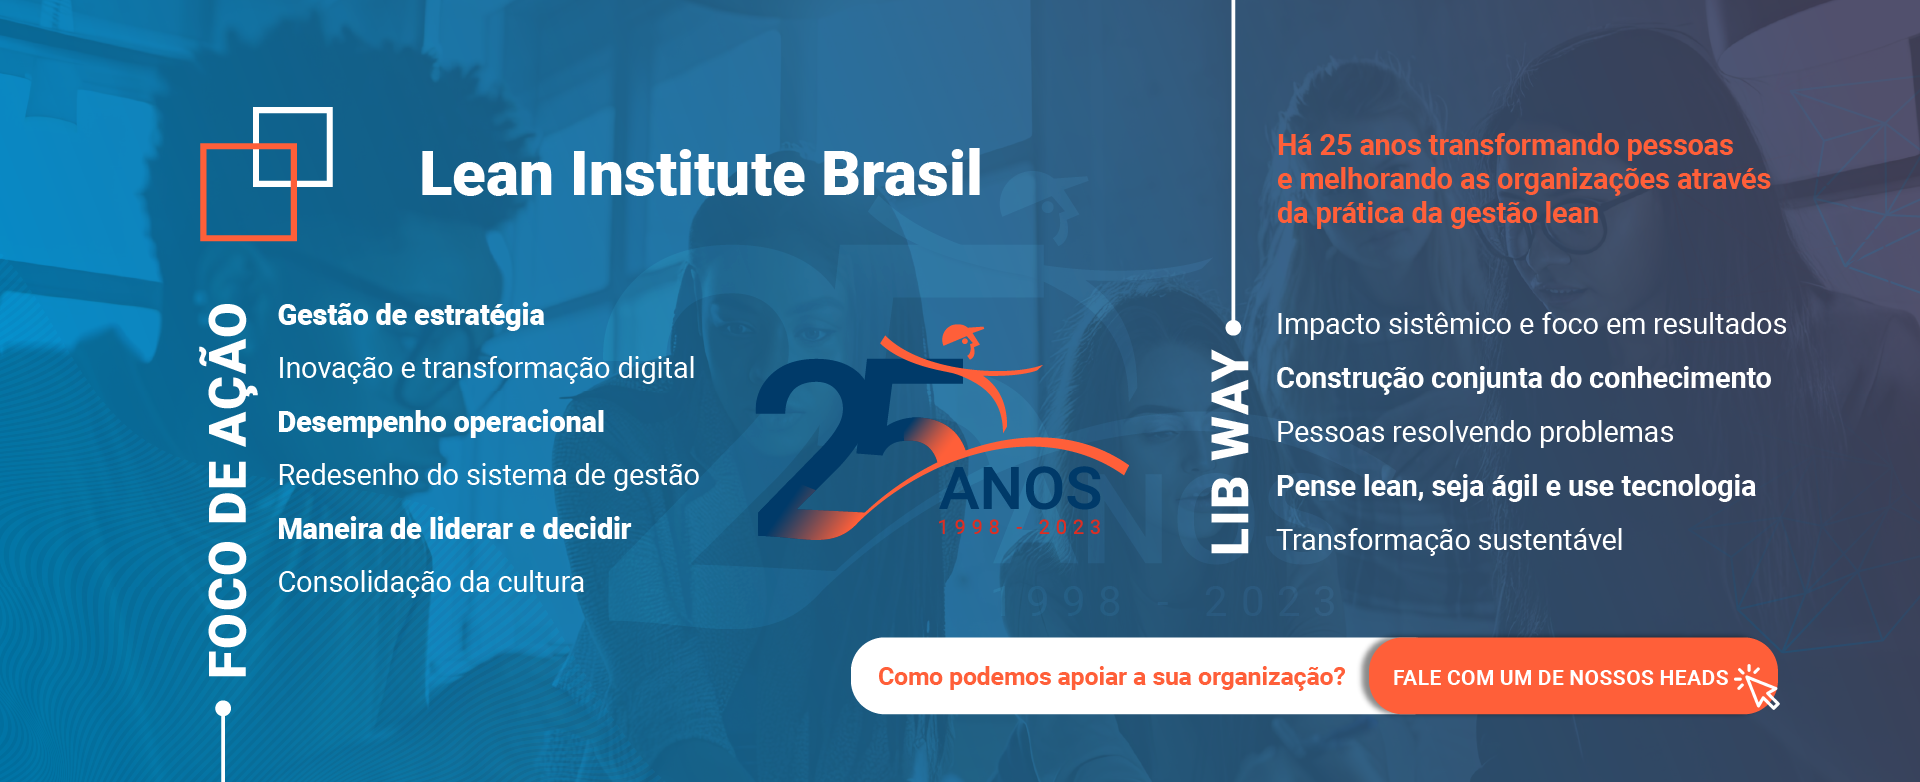 Lean Institute Brasil - 25 anos